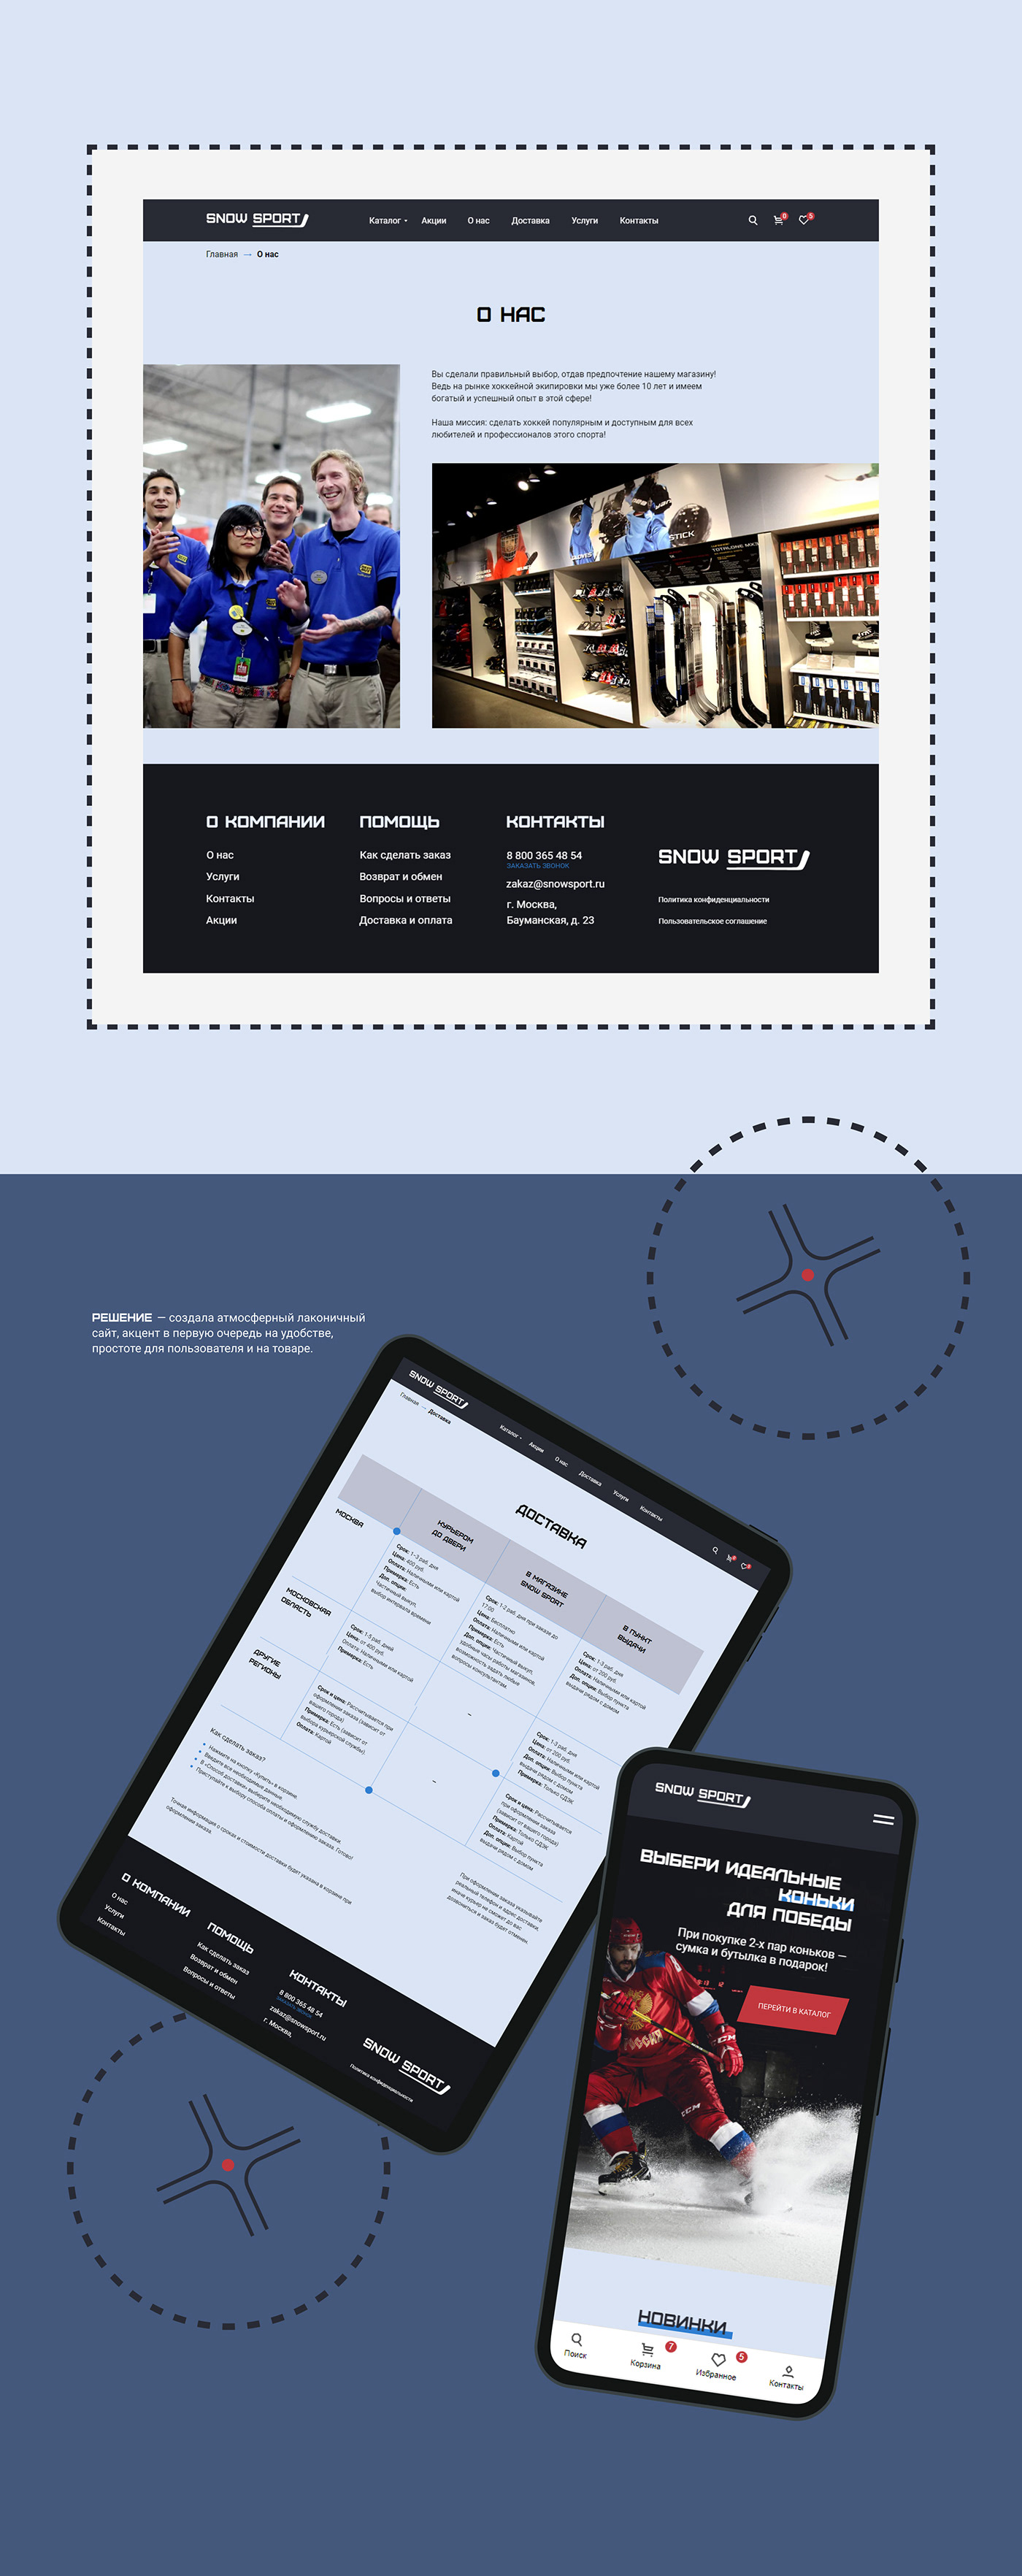 app design Figma UI/UX веб-дизайн дизайн сайта интернет-магазин коньки сайт спорт фирменный стиль